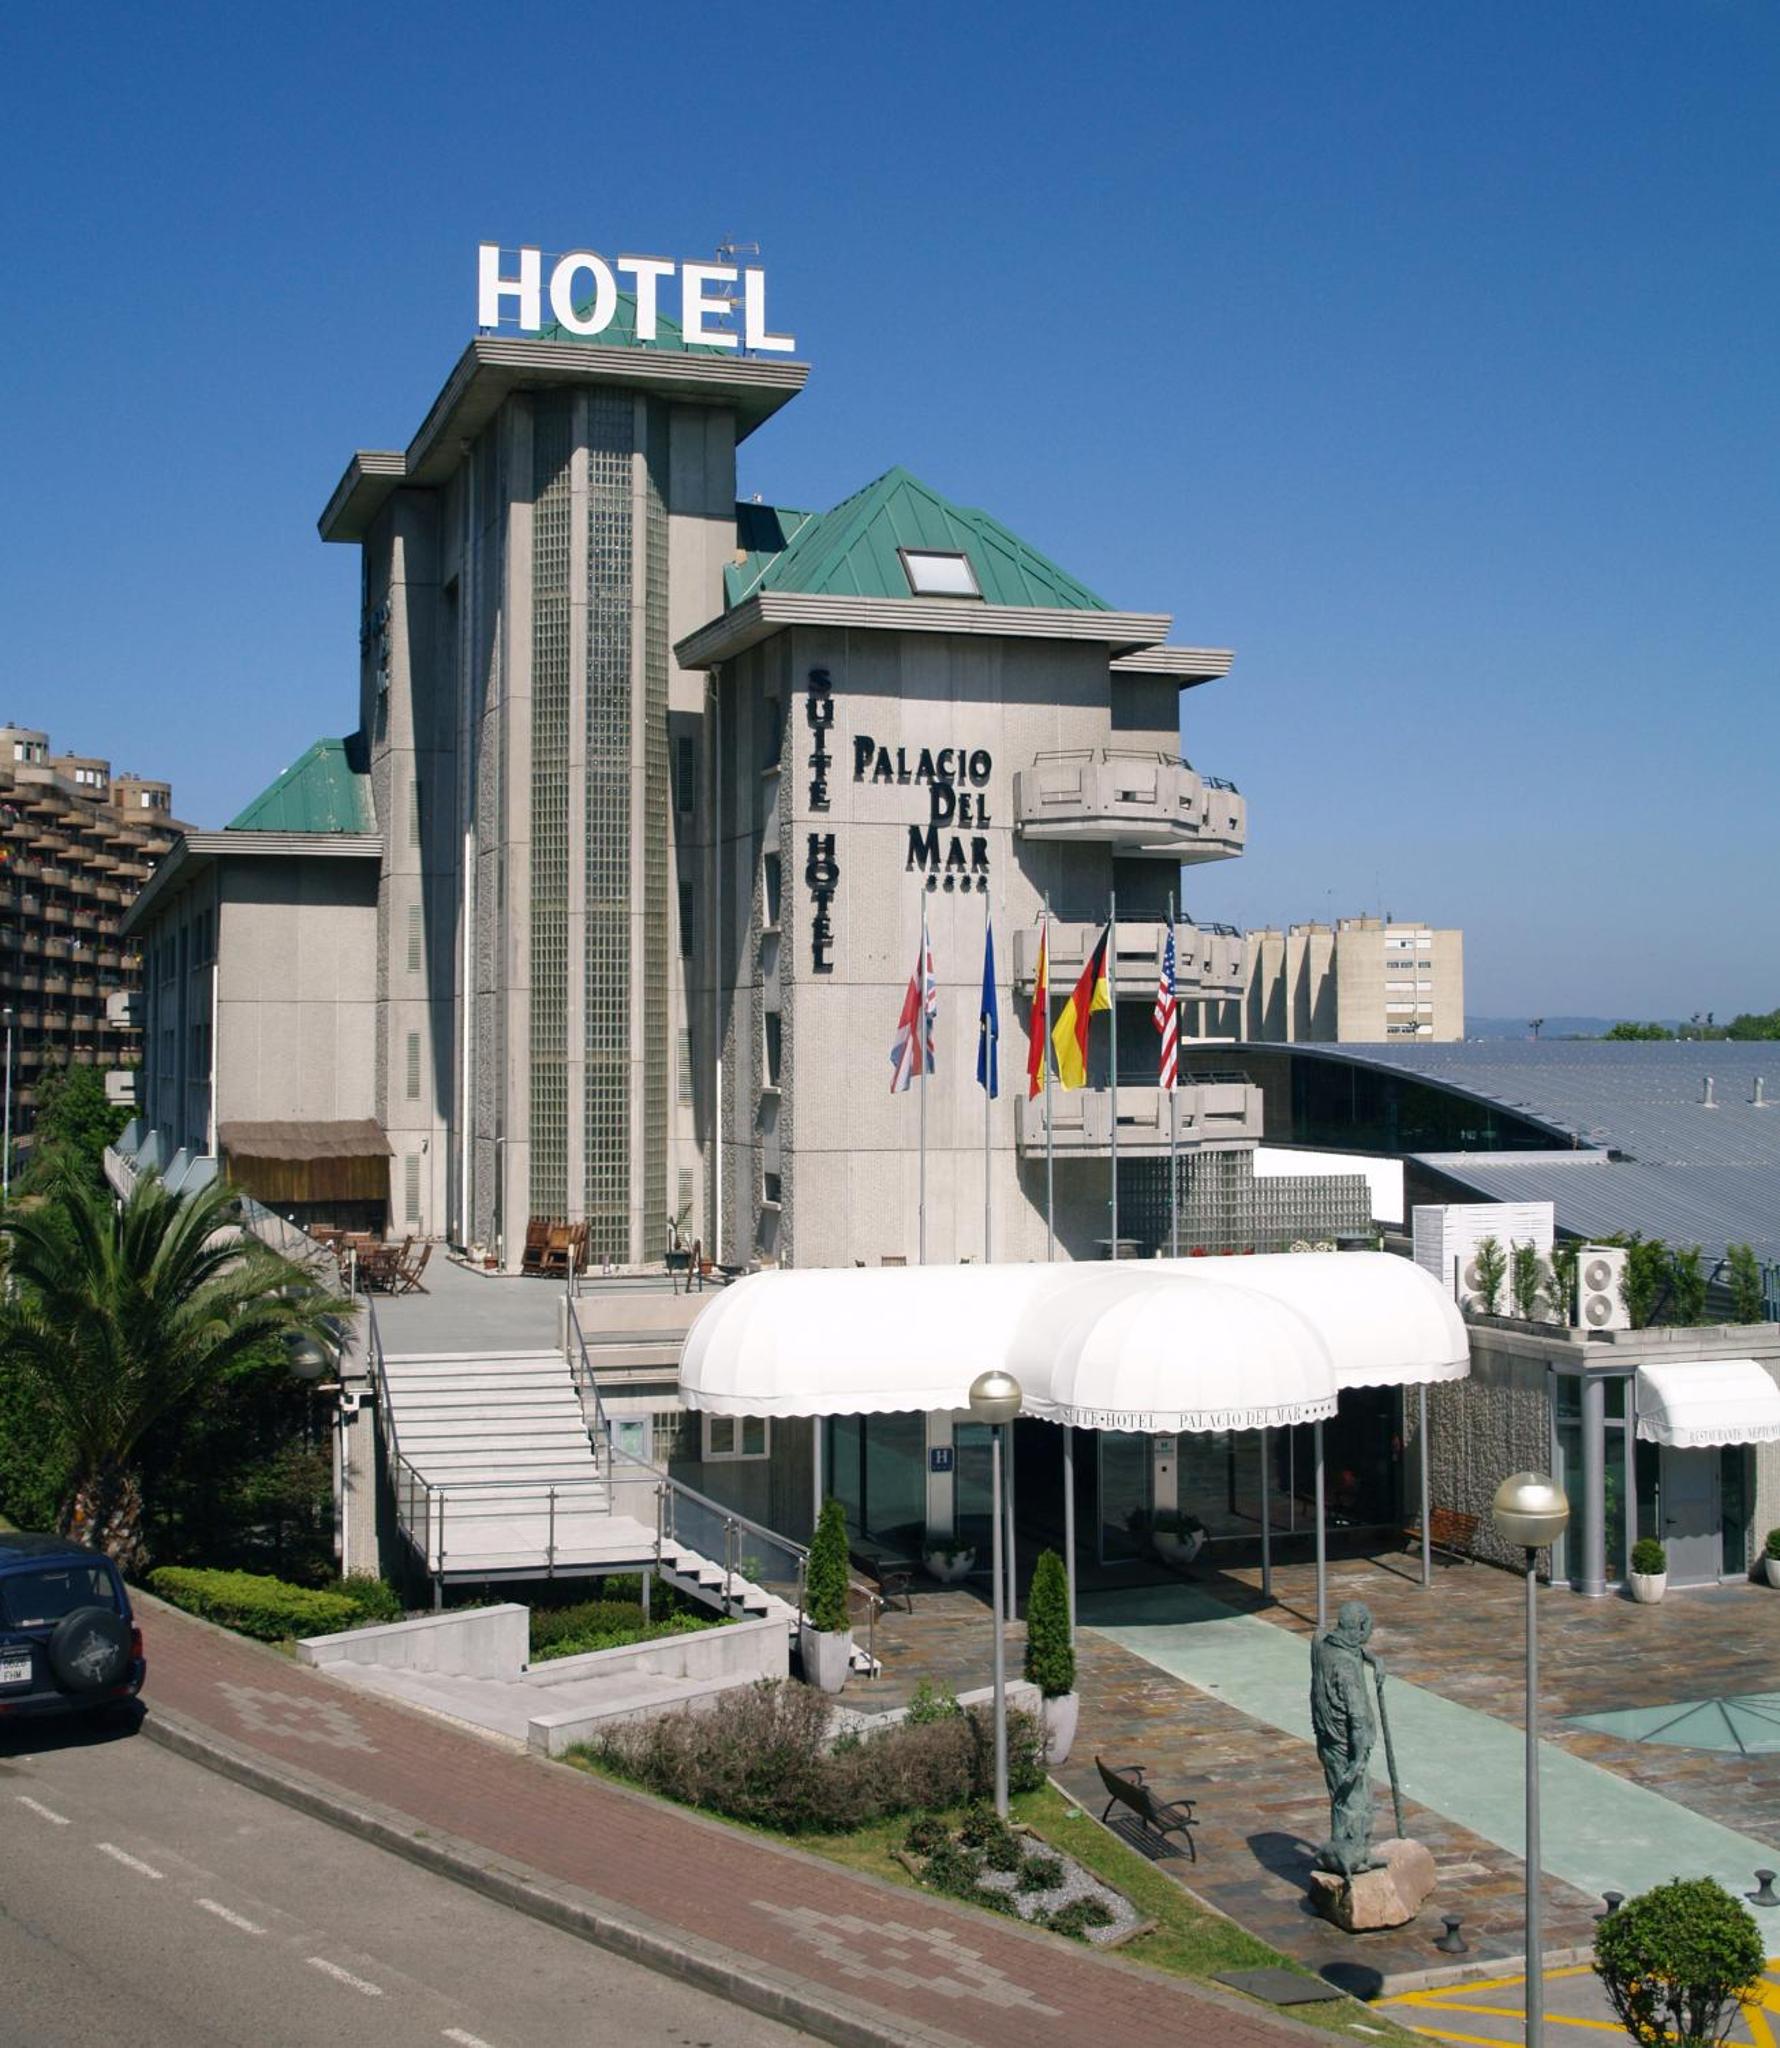 Sercotel Hotel Palacio del Mar